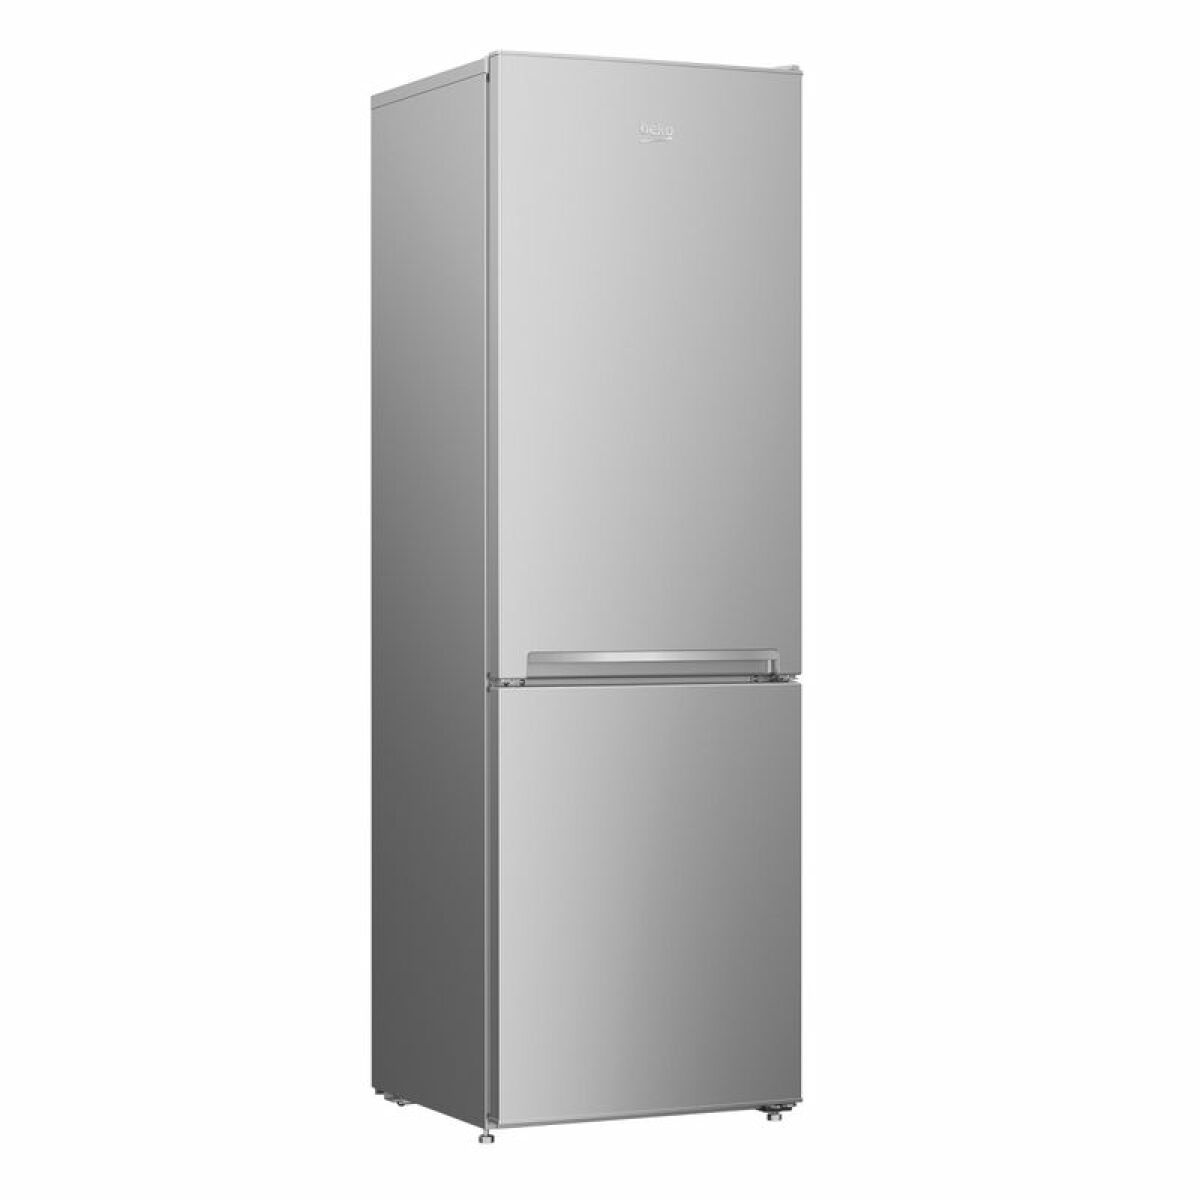 Réfrigérateur Beko Réfrigérateur combiné 54cm 262l statique - rcsa270k30sn - BEKO